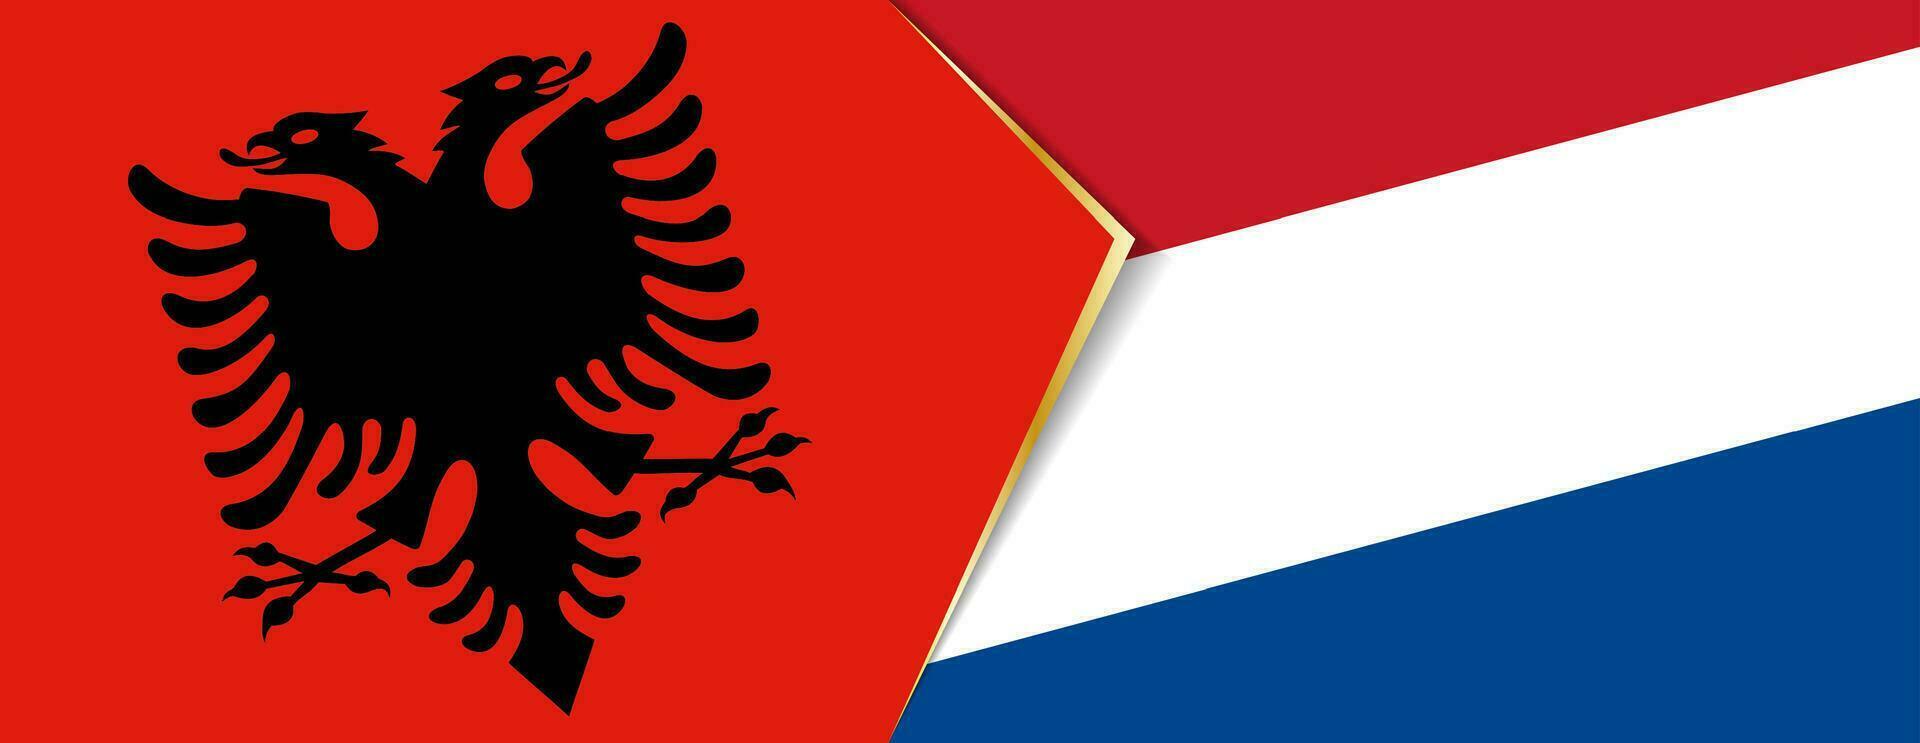 Albania e Olanda bandiere, Due vettore bandiere.